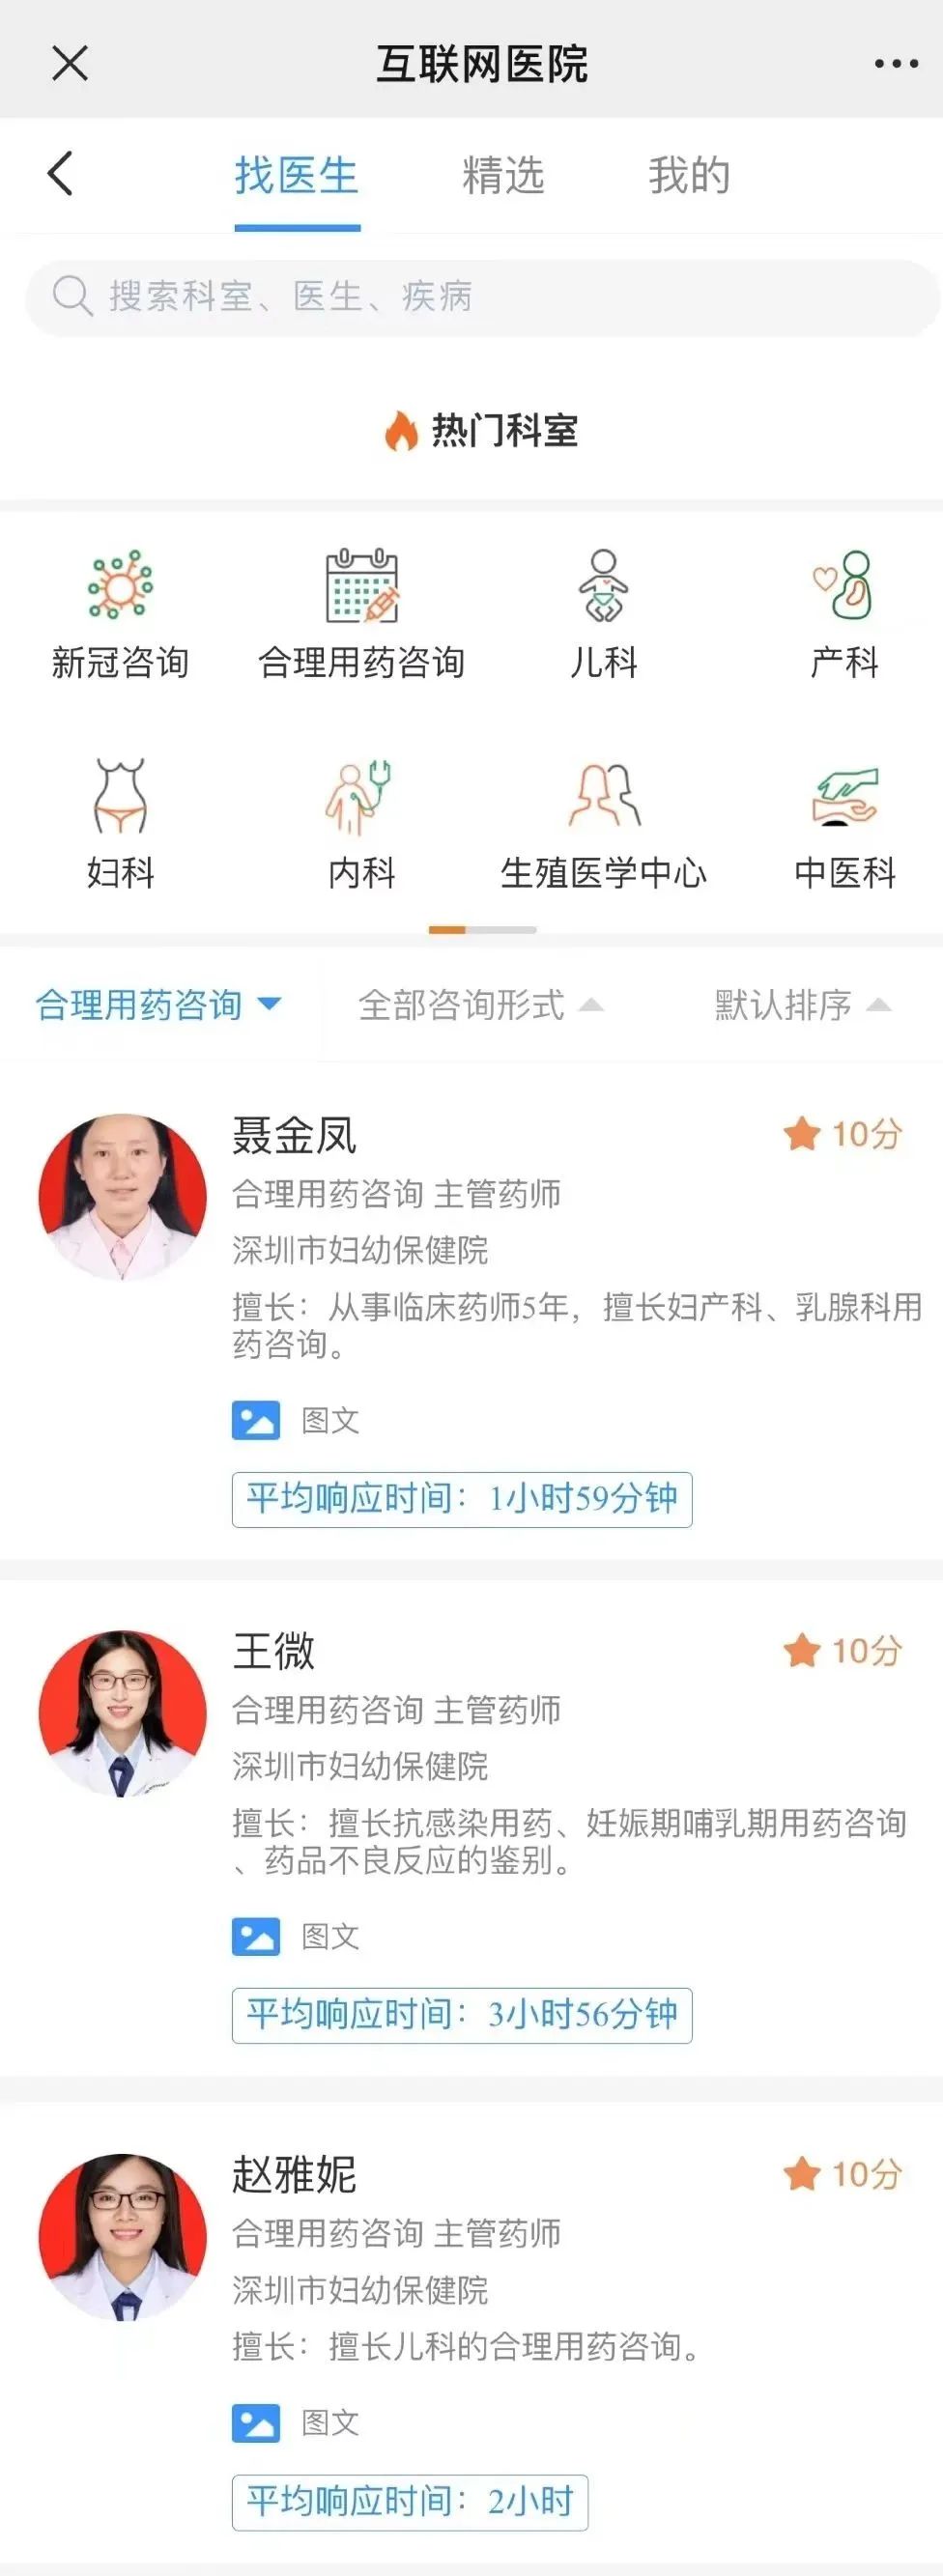 深圳市妇幼保健院开展「互联网合理用药咨询」服务